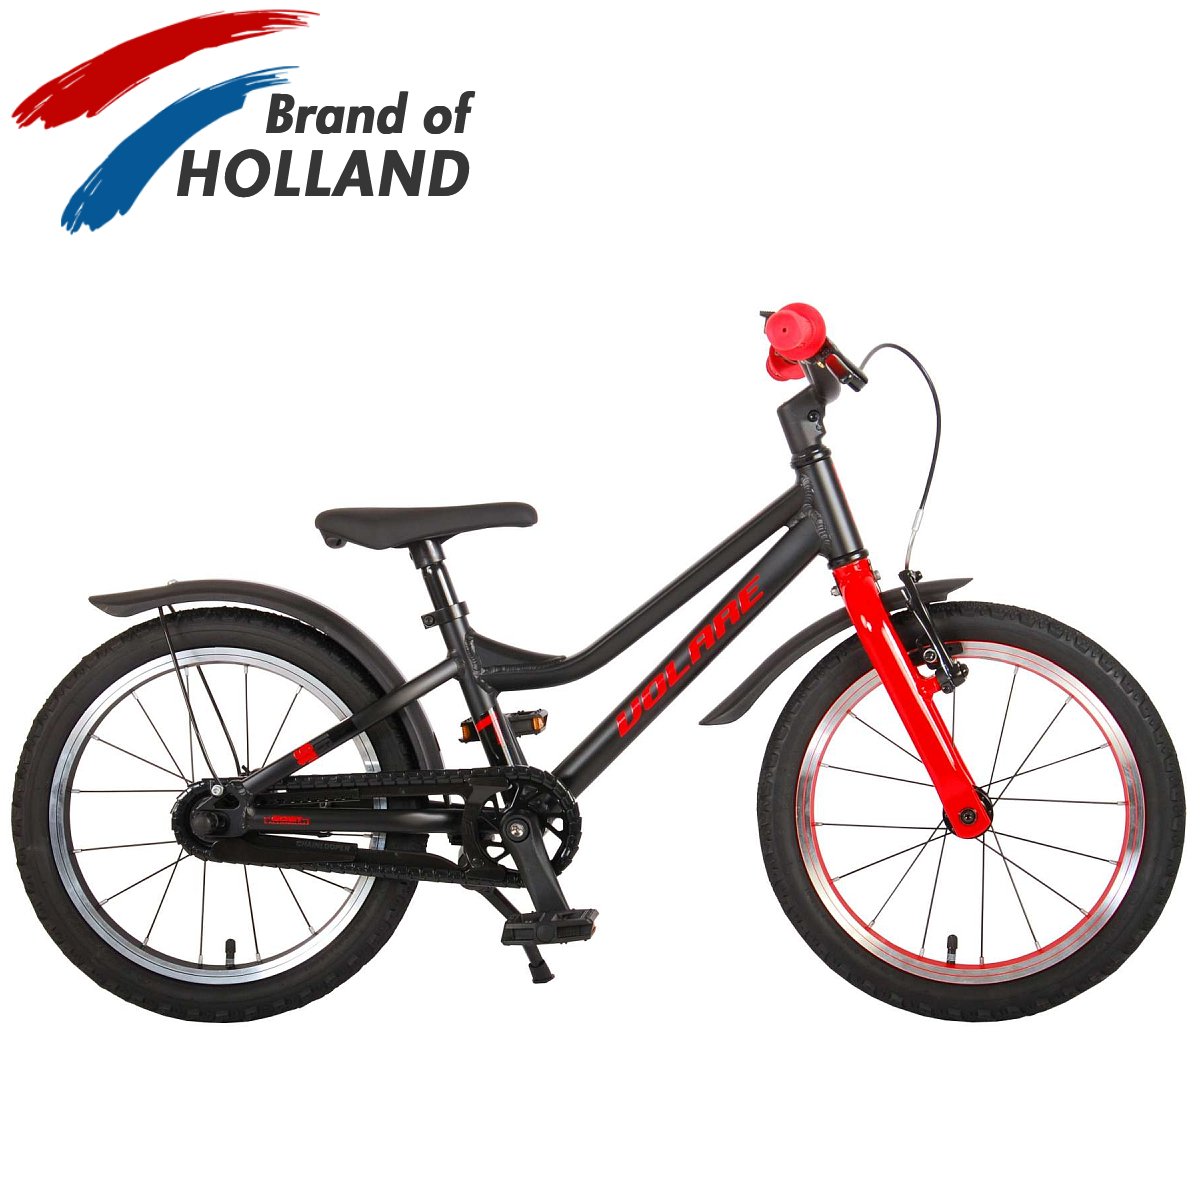 Vaikiškas dviratis VOLARE 16" Blaster (21670) juodas/raudonas - 1